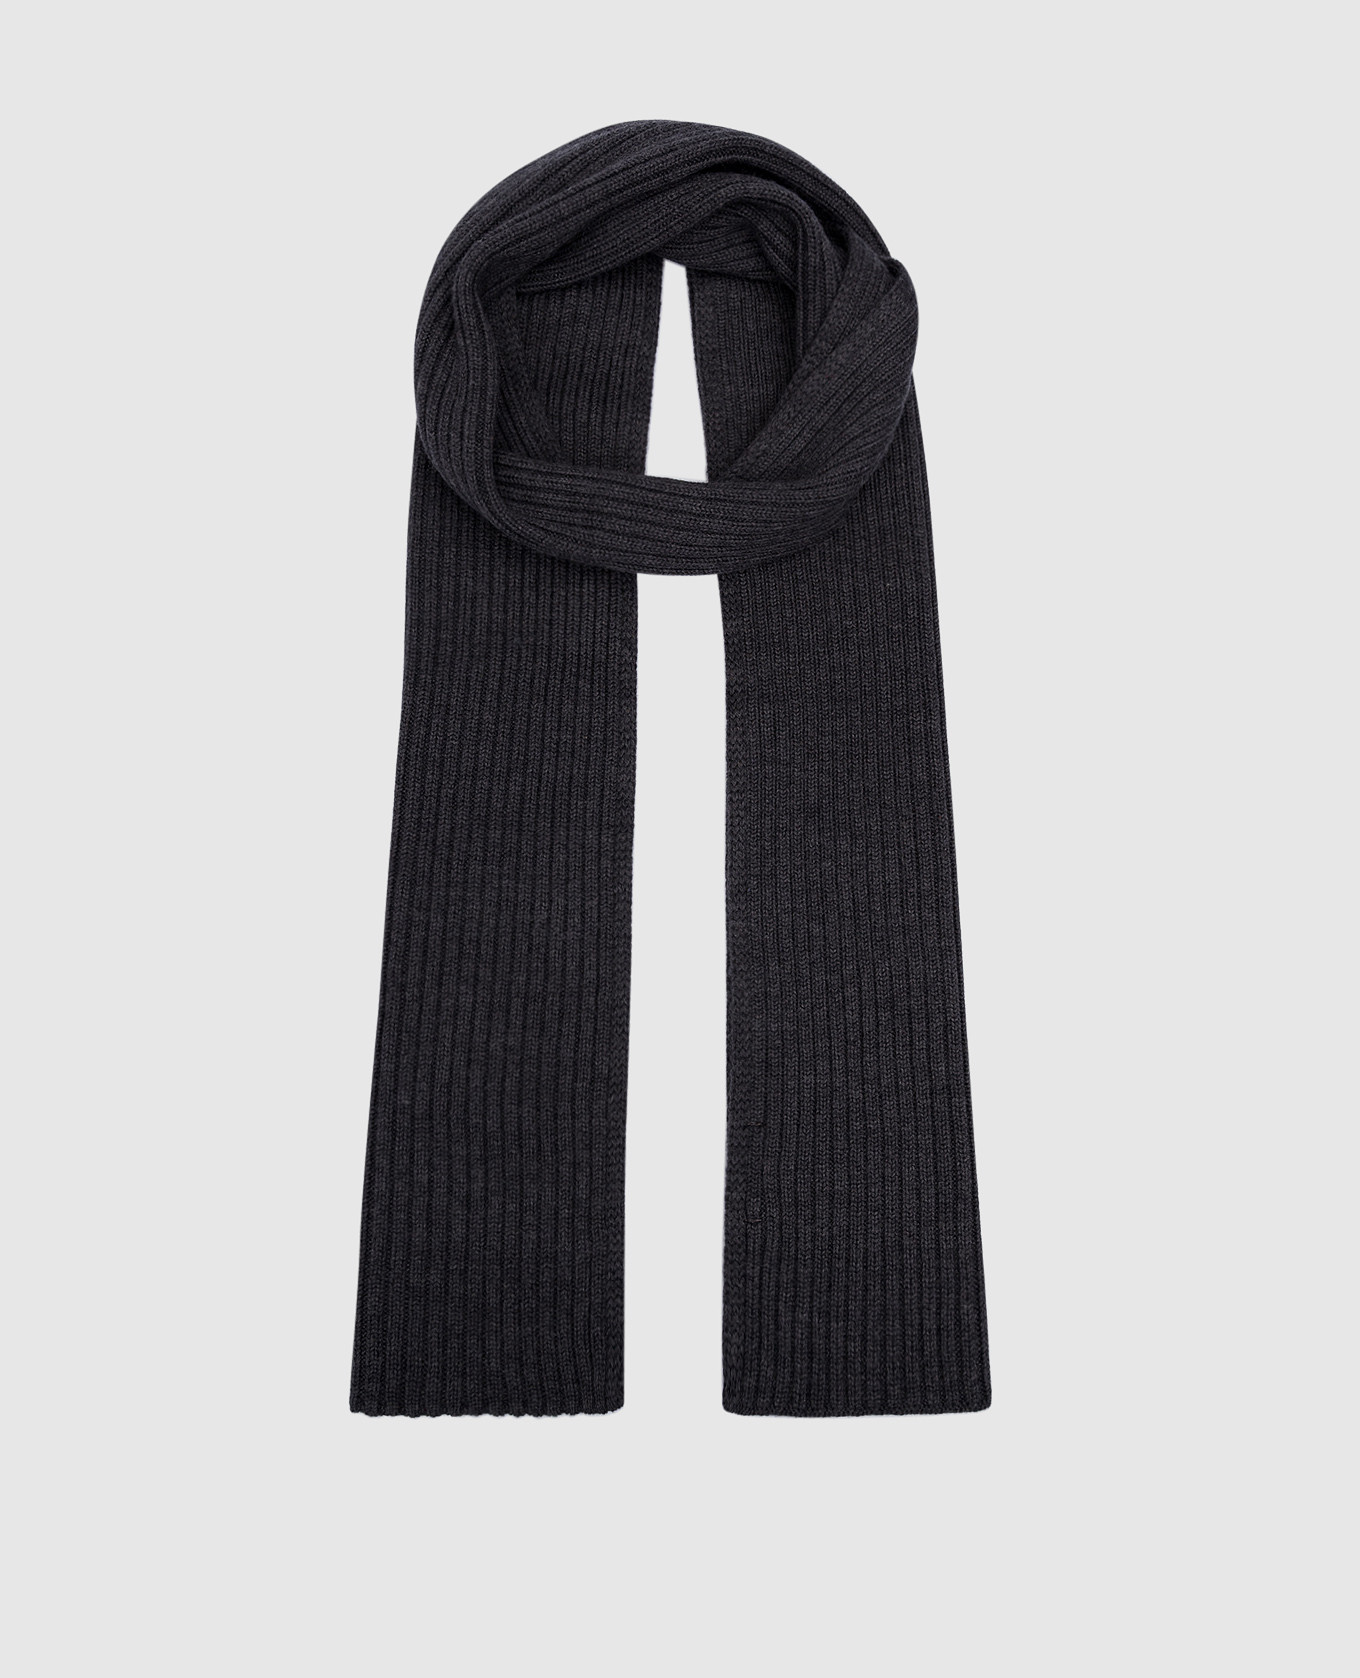 Серый шарф в рубчик из мериносовой шерсти.